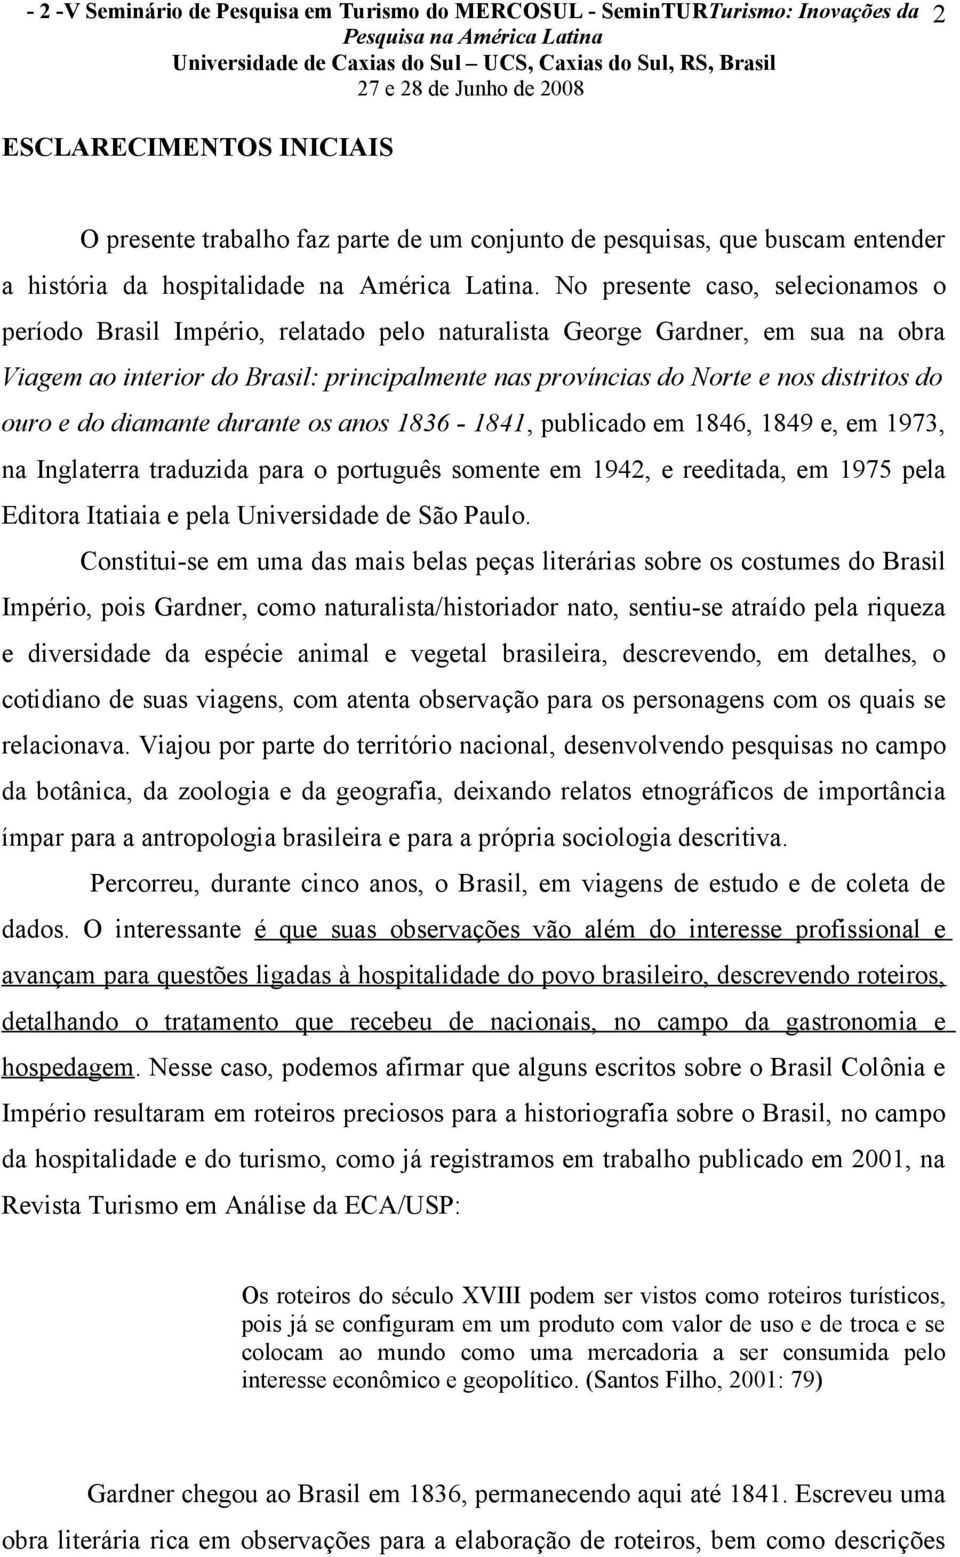 No presente caso, selecionamos o período Brasil Império, relatado pelo naturalista George Gardner, em sua na obra Viagem ao interior do Brasil: principalmente nas províncias do Norte e nos distritos